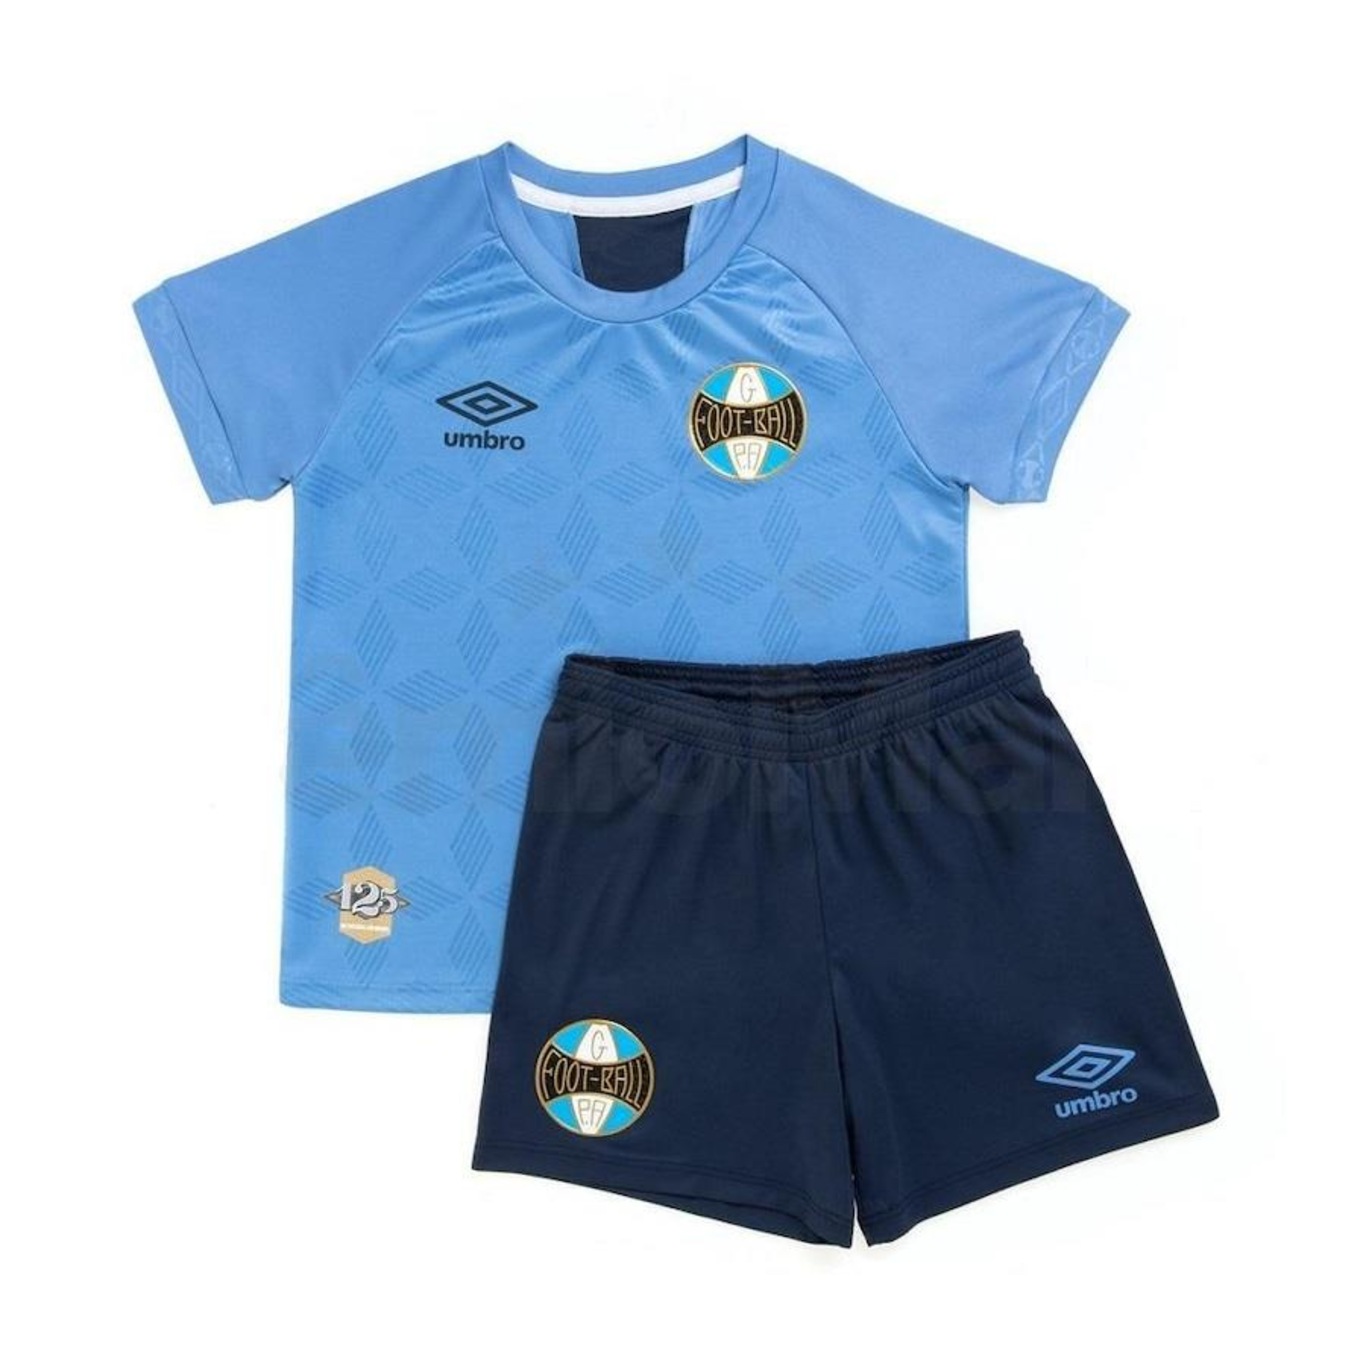 Kit do Grêmio III 2020 Umbro Camisa + Calção - Infantil - Foto 2